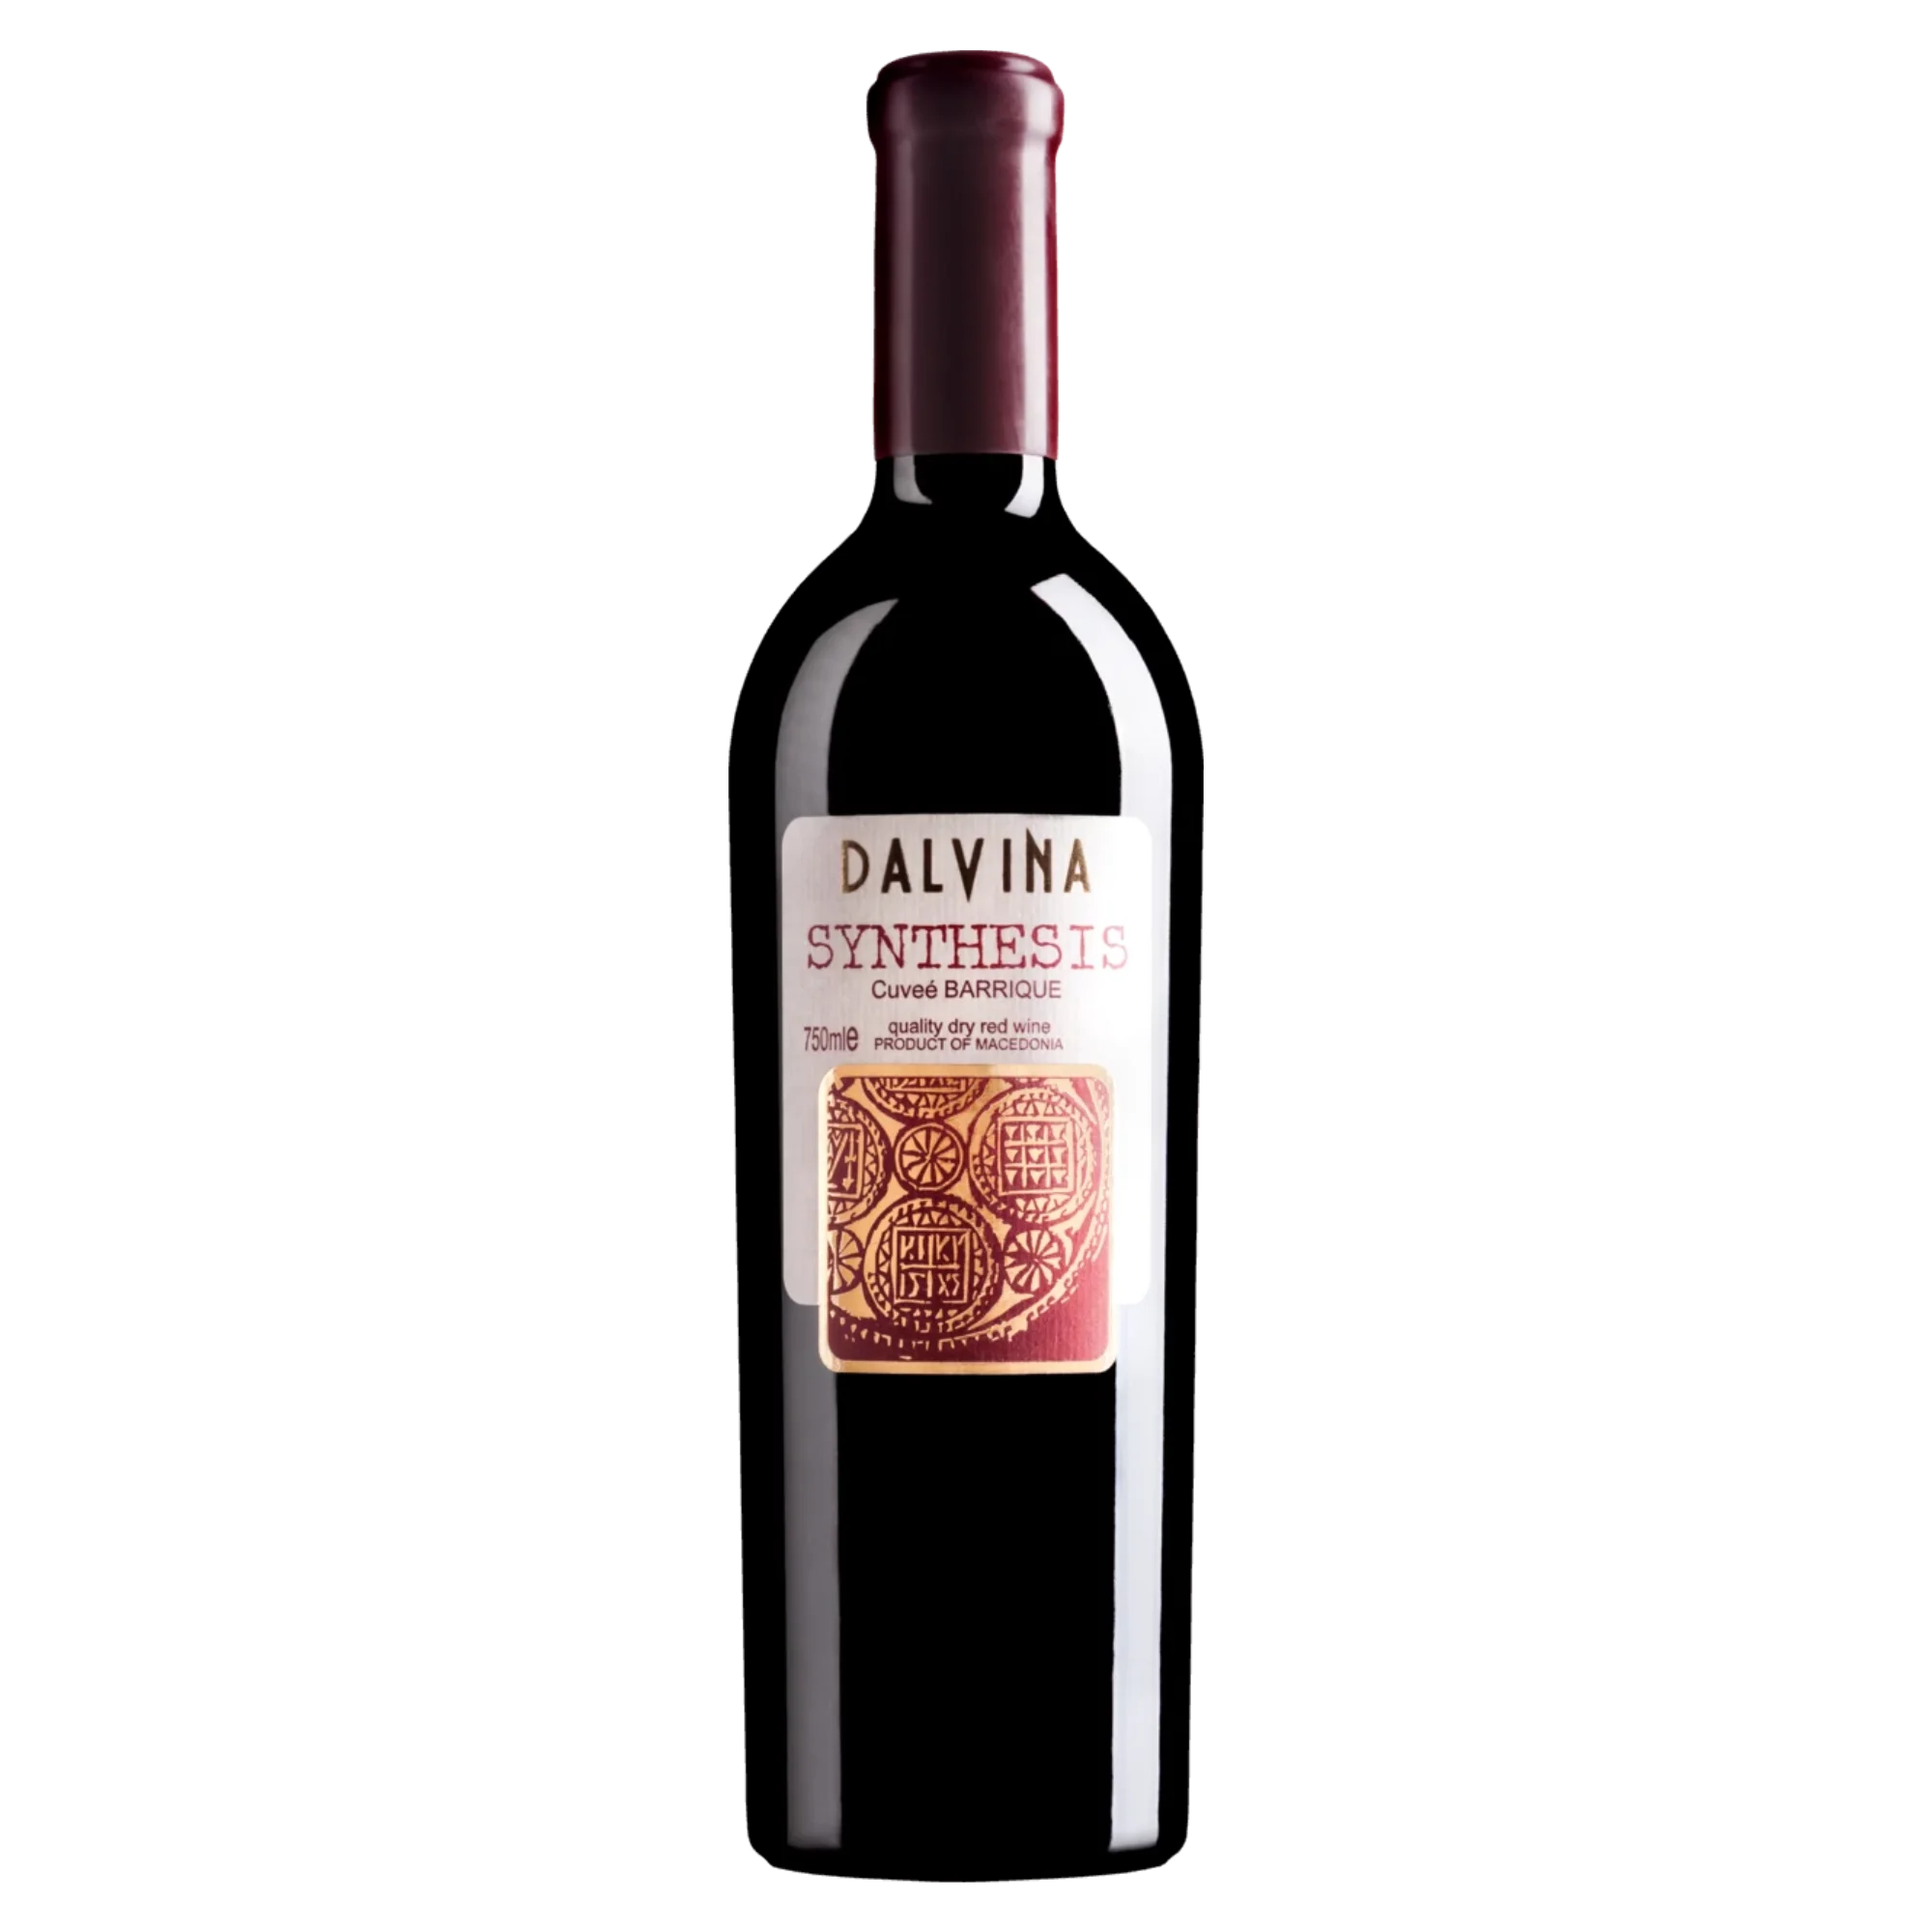 Synthesis Barrique 2016 - Rotwein trocken aus Nordmazedonien - Dalvina Winery